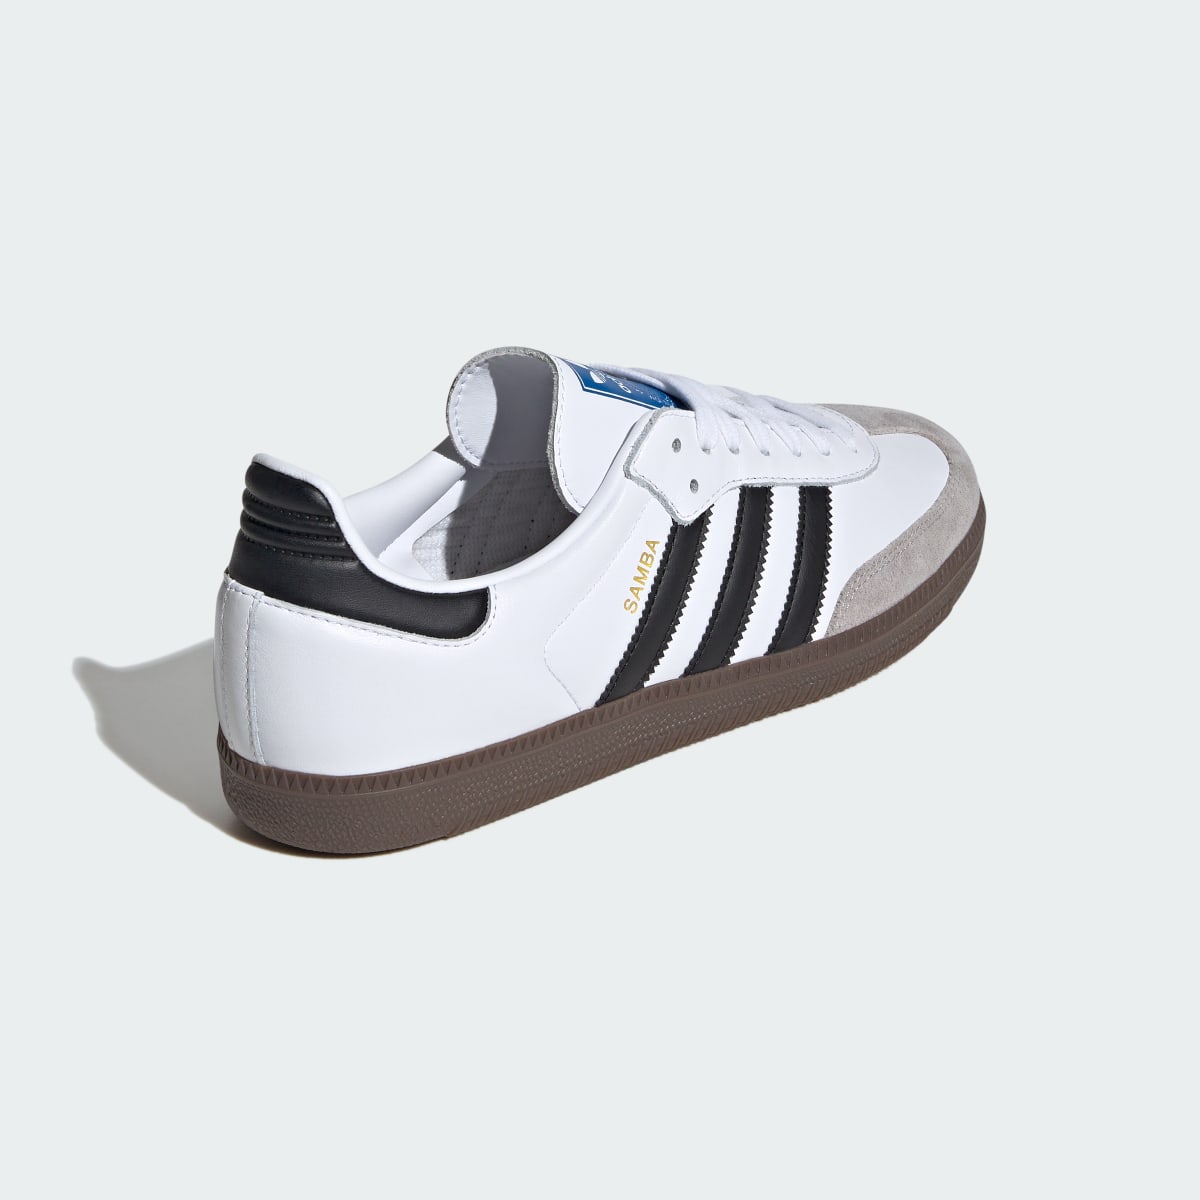 Adidas Samba OG Schuh. 10